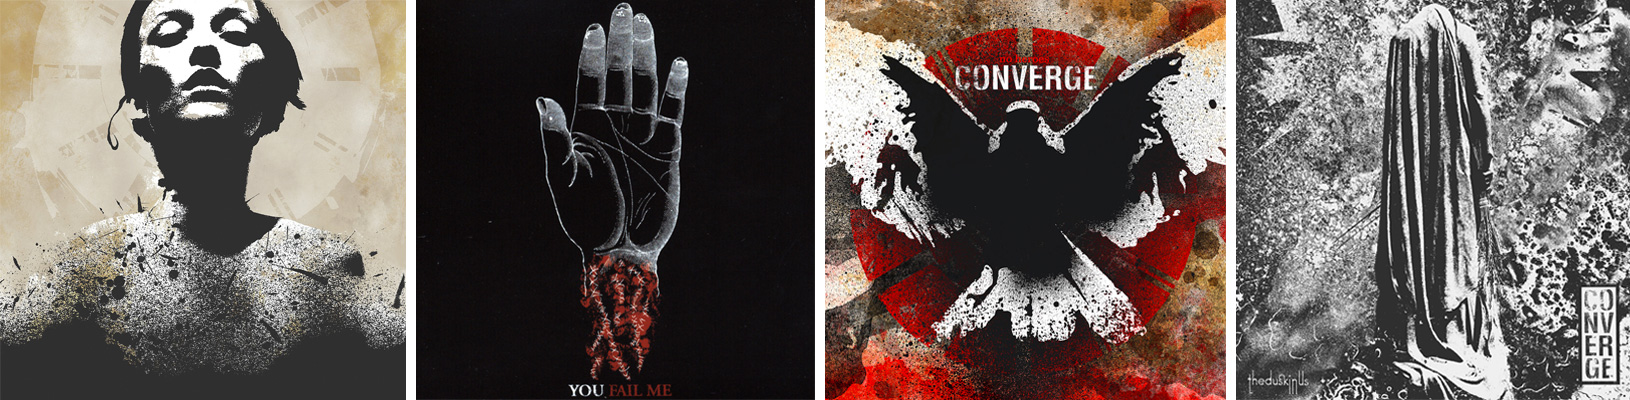 converge-album-covers